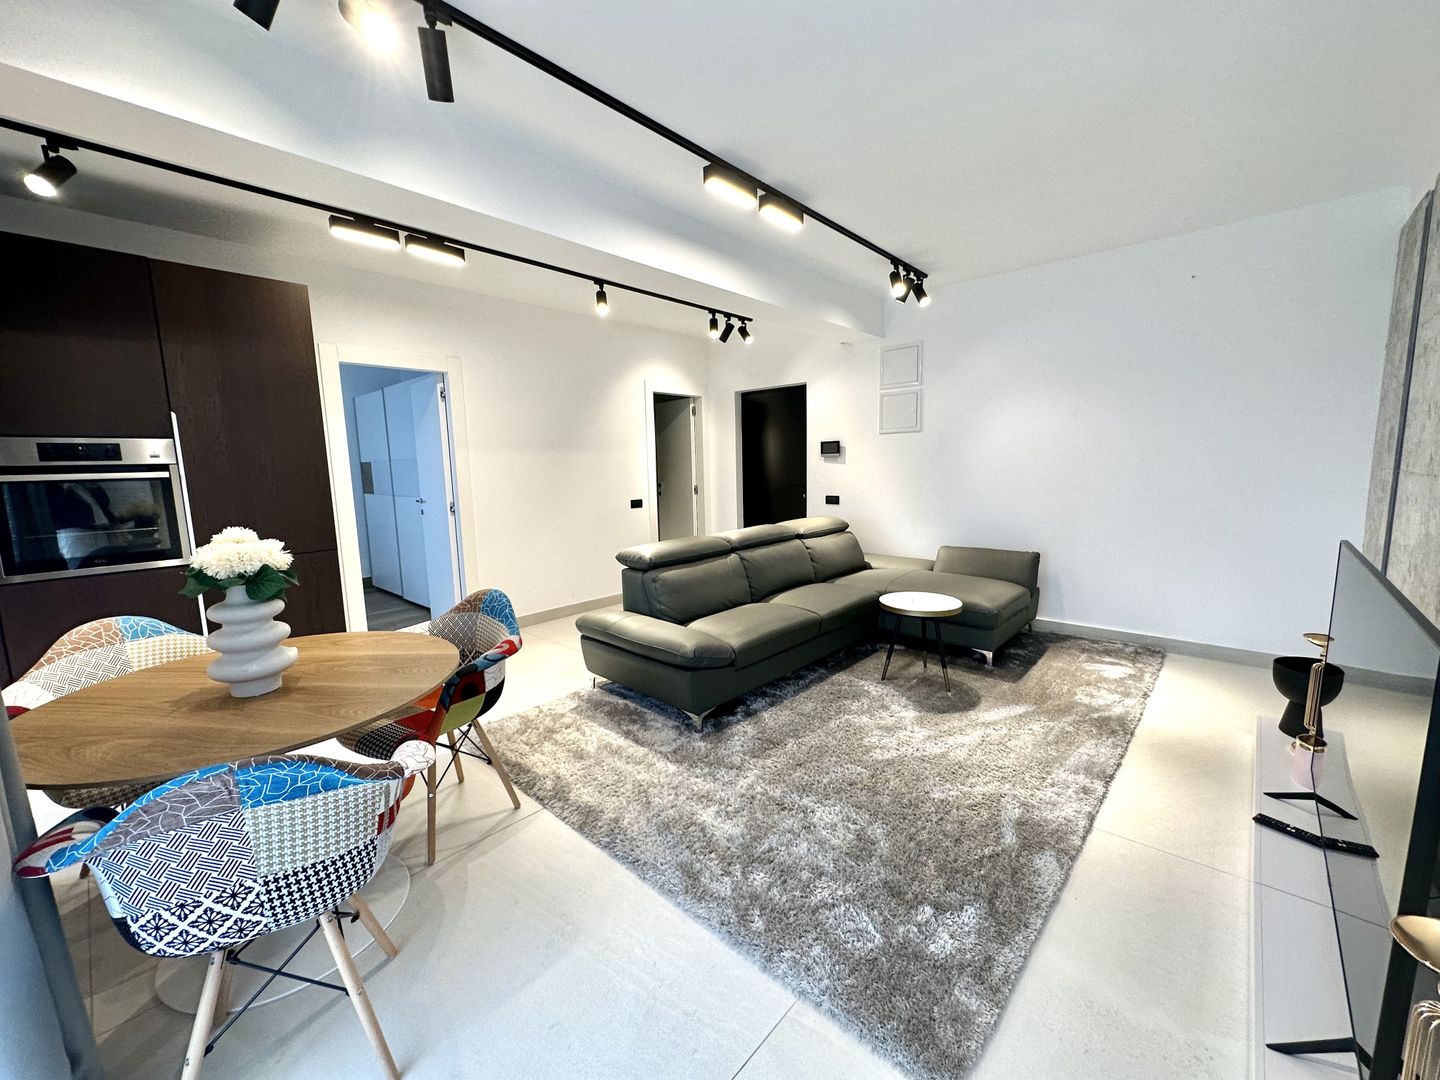 Apartament Luxos 2 camere | Domenii | Loc de parcare inclus